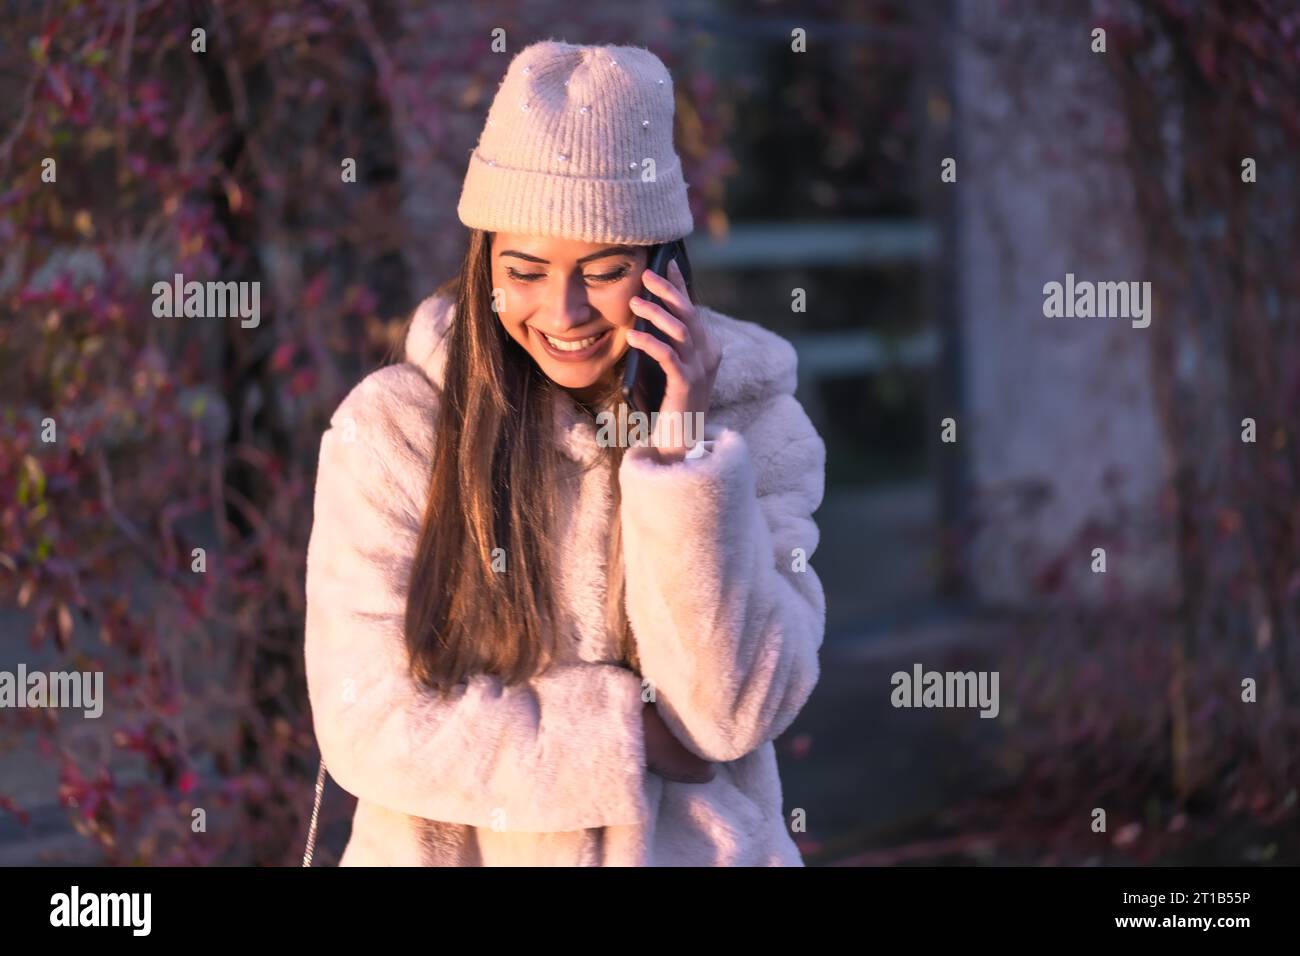 Jeune jolie brunette caucasienne marchant dans la ville en hiver, portant un pull en laine rose Banque D'Images